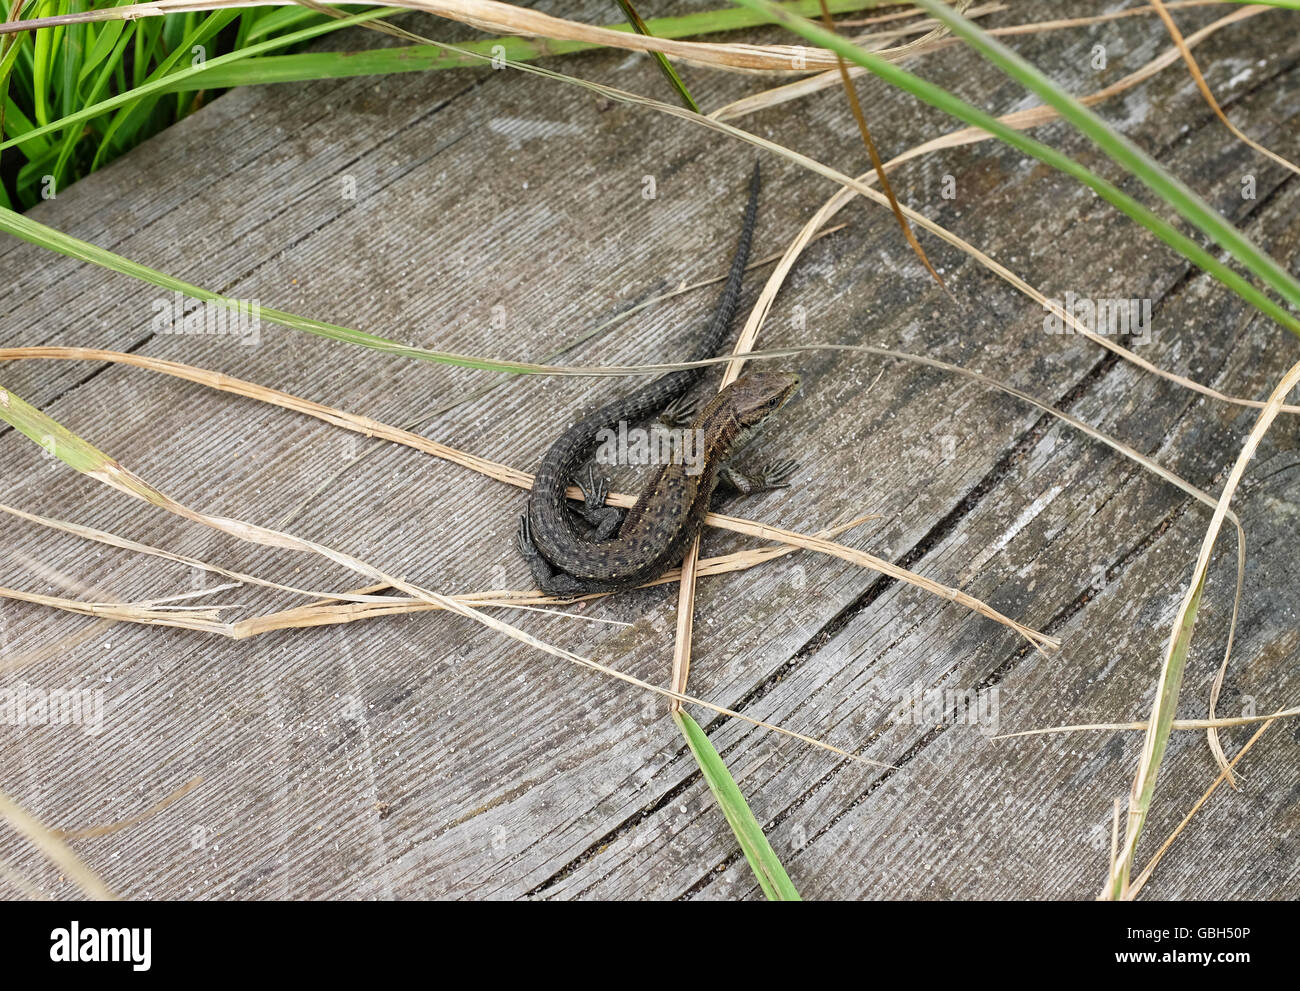 Eurasian lucertola comune, nome scientifico Lacerta vivipara o Zootoca vivipara, si nasconde tra erba lunga su una passerella di legno. Foto Stock